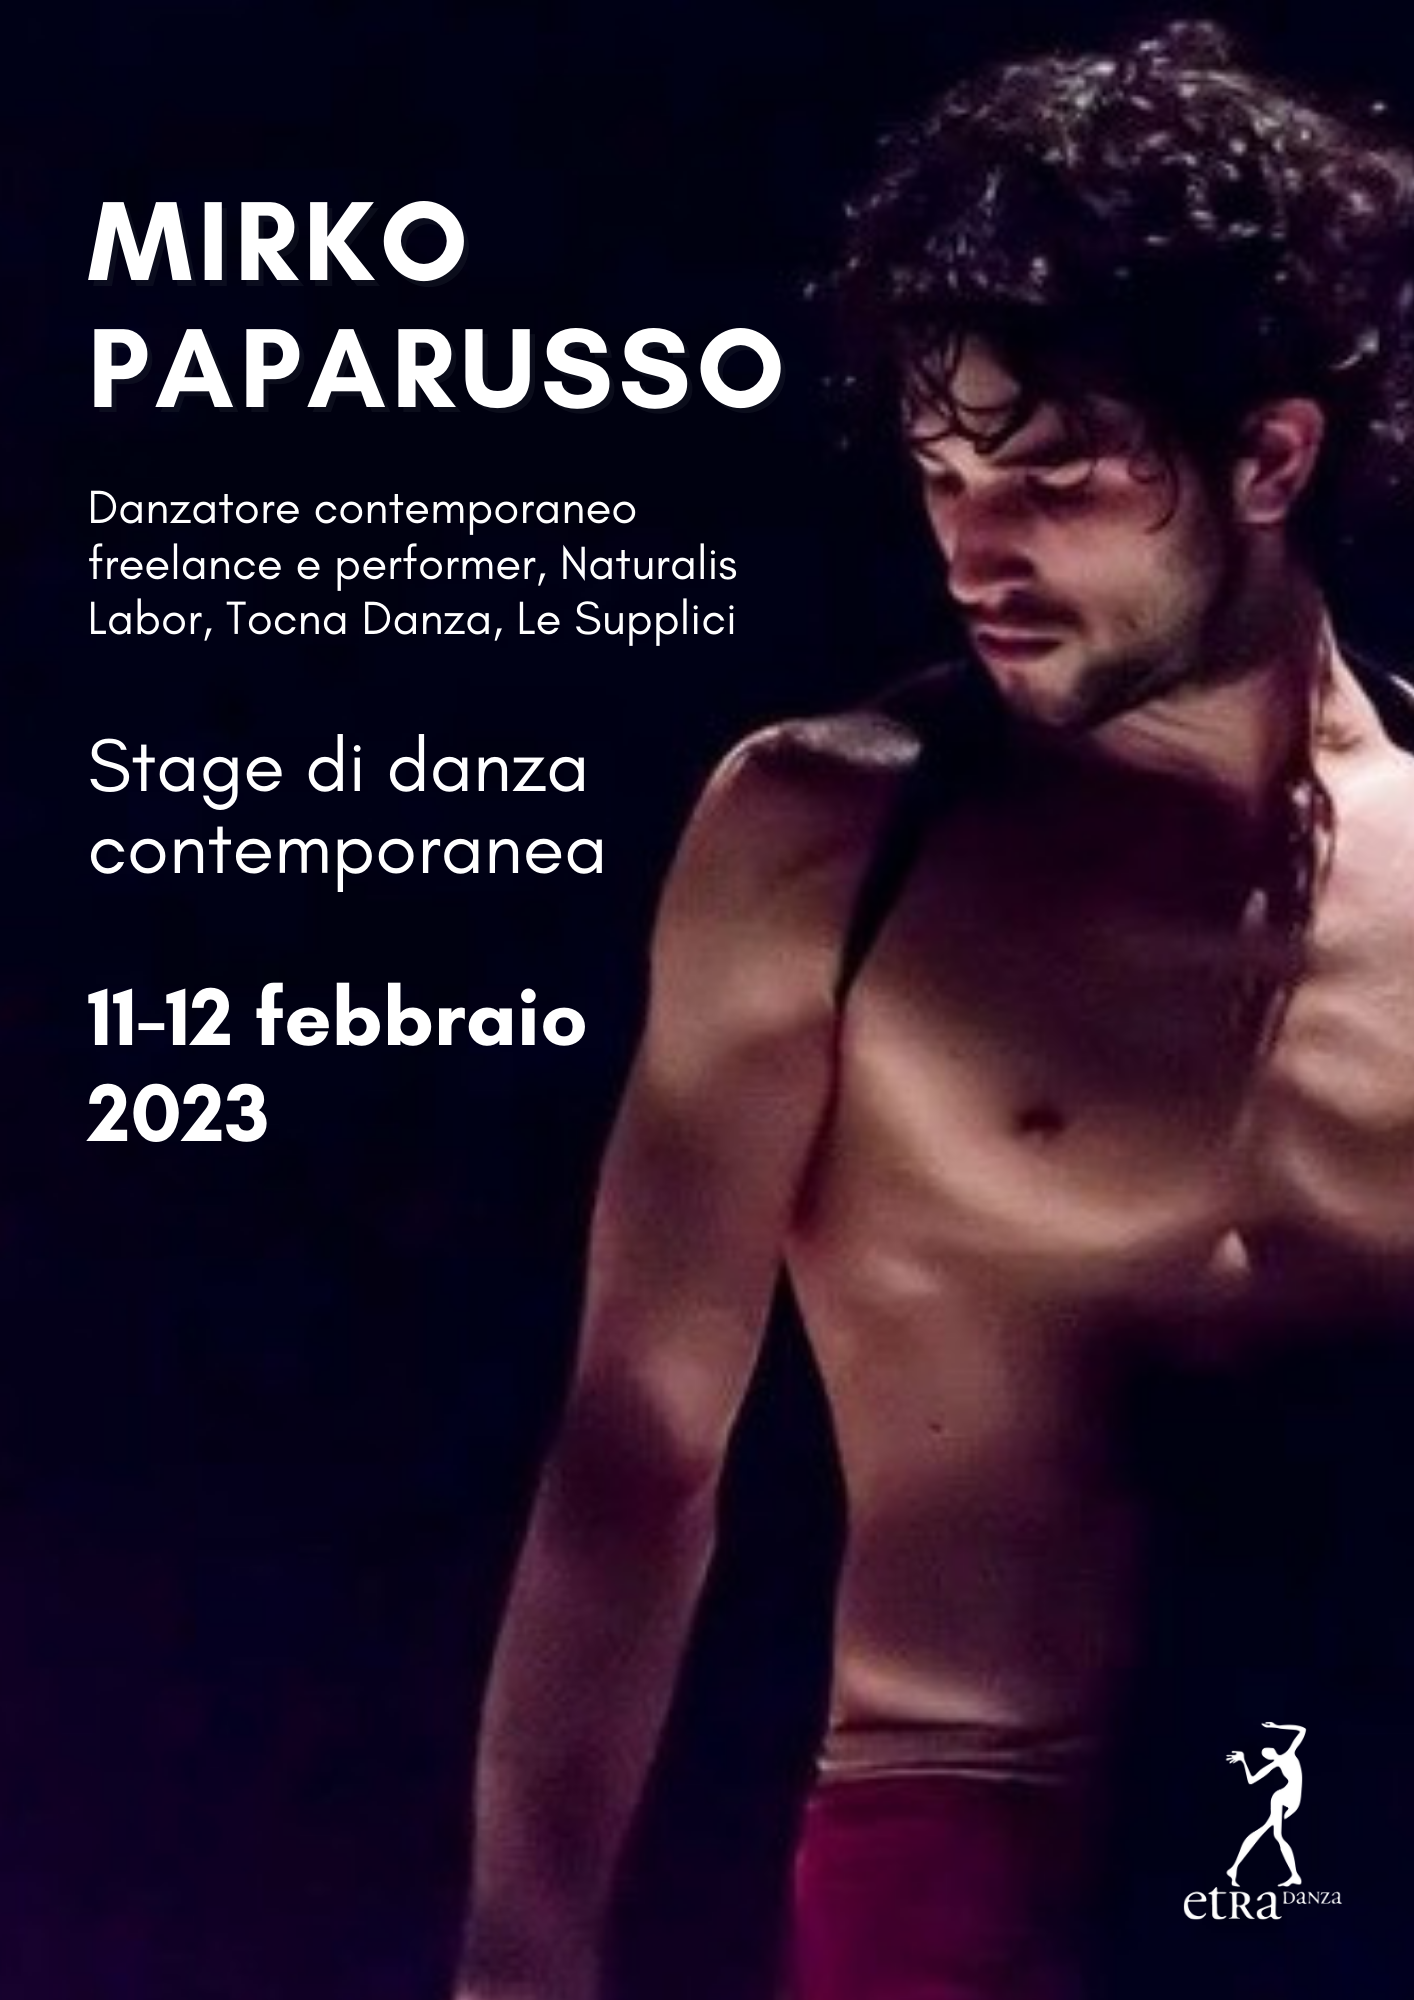 Mirko paparusso_etradanza_stage